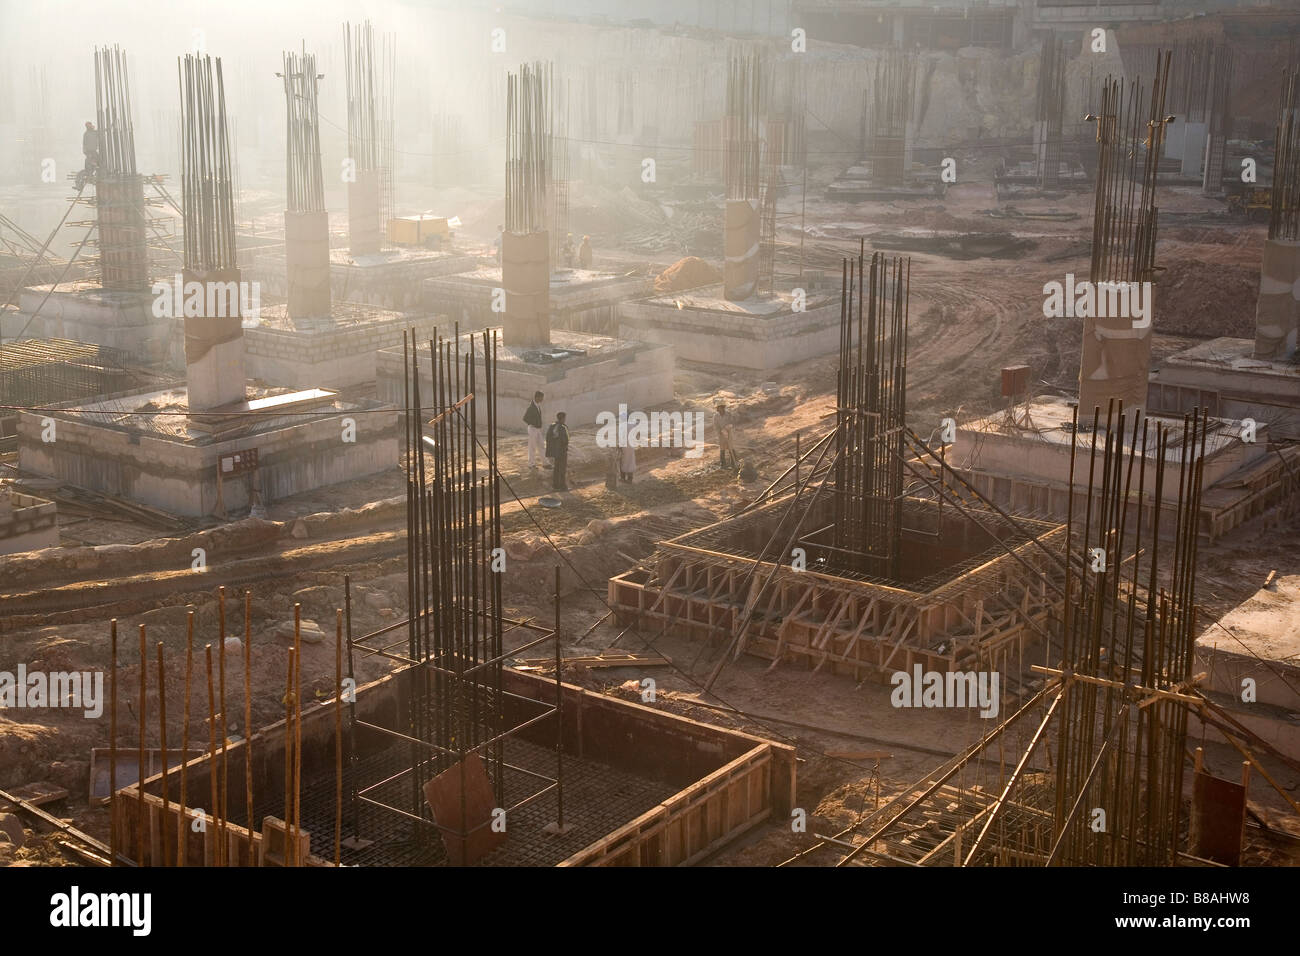 Aste in acciaio poke fuori delle fondamenta su un sito in costruzione a Bangalore in India. Foto Stock